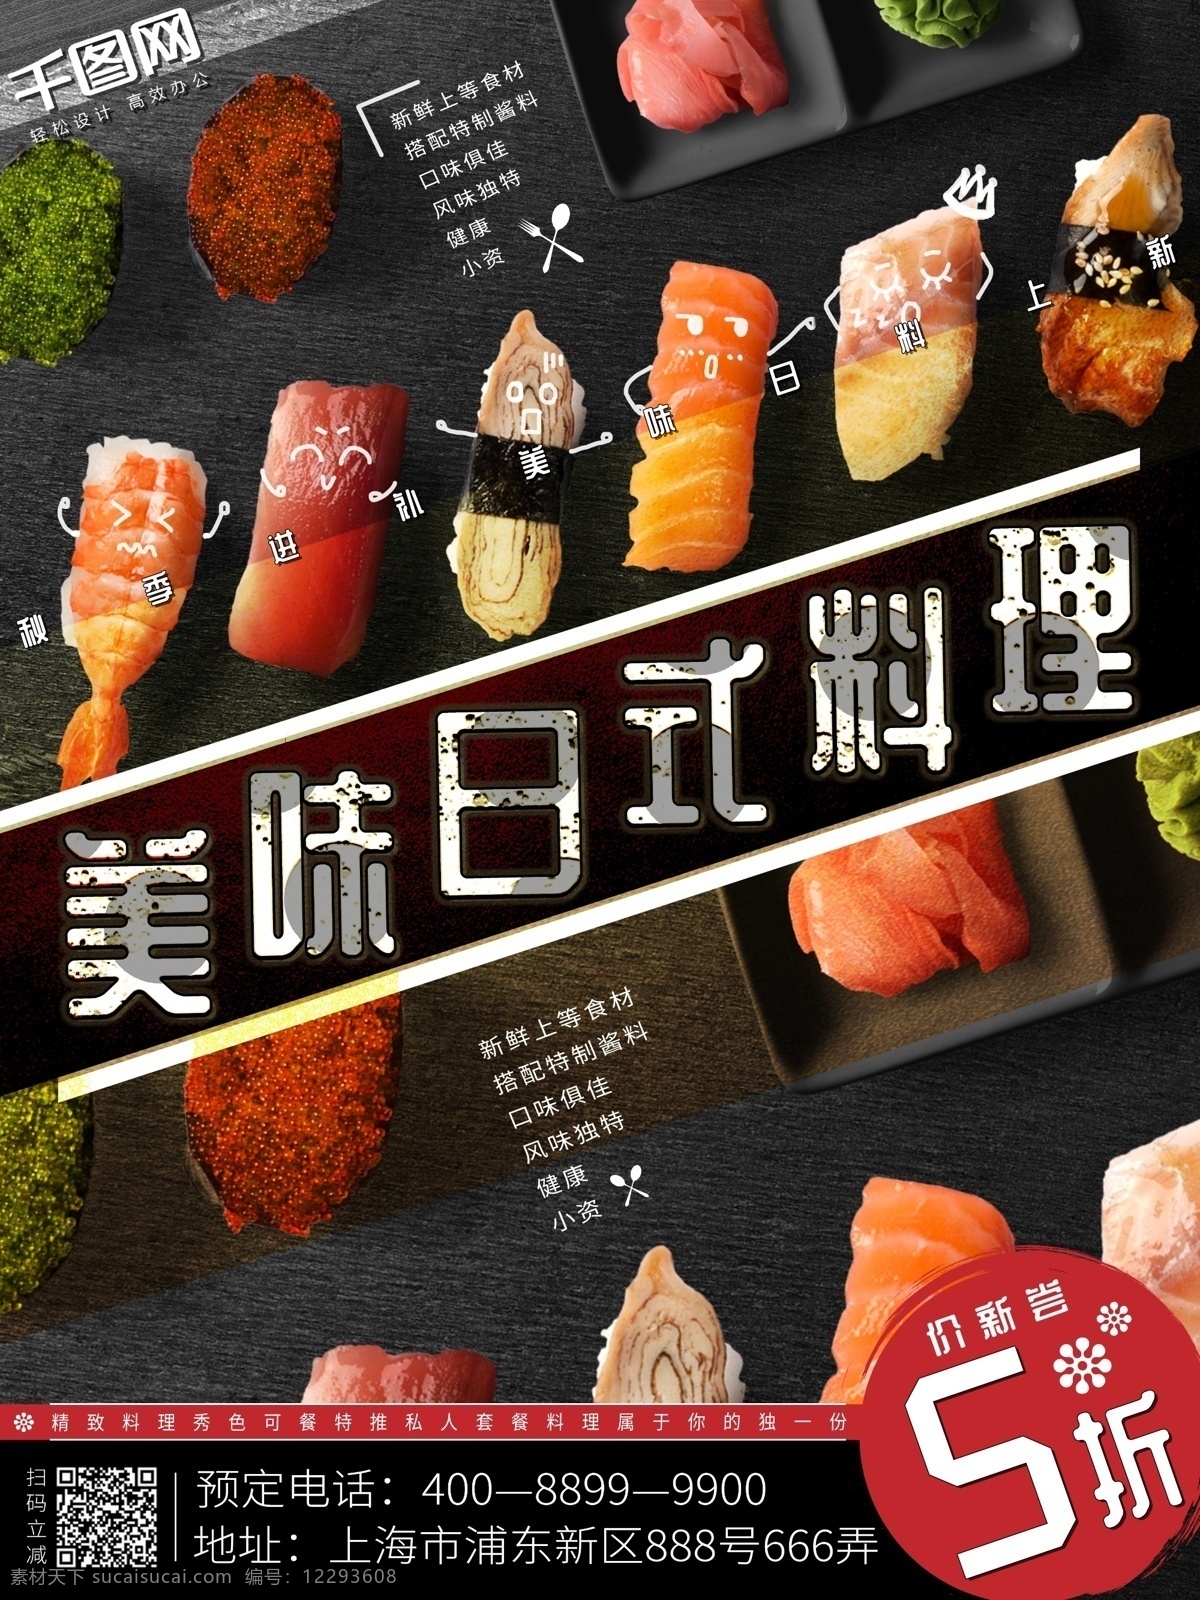 美味 日 料 寿司 新品 优惠 冷色 简约 美食 海报 新品上市 打折 版式 日式料理 优惠大促 原创 psd格式 cco图